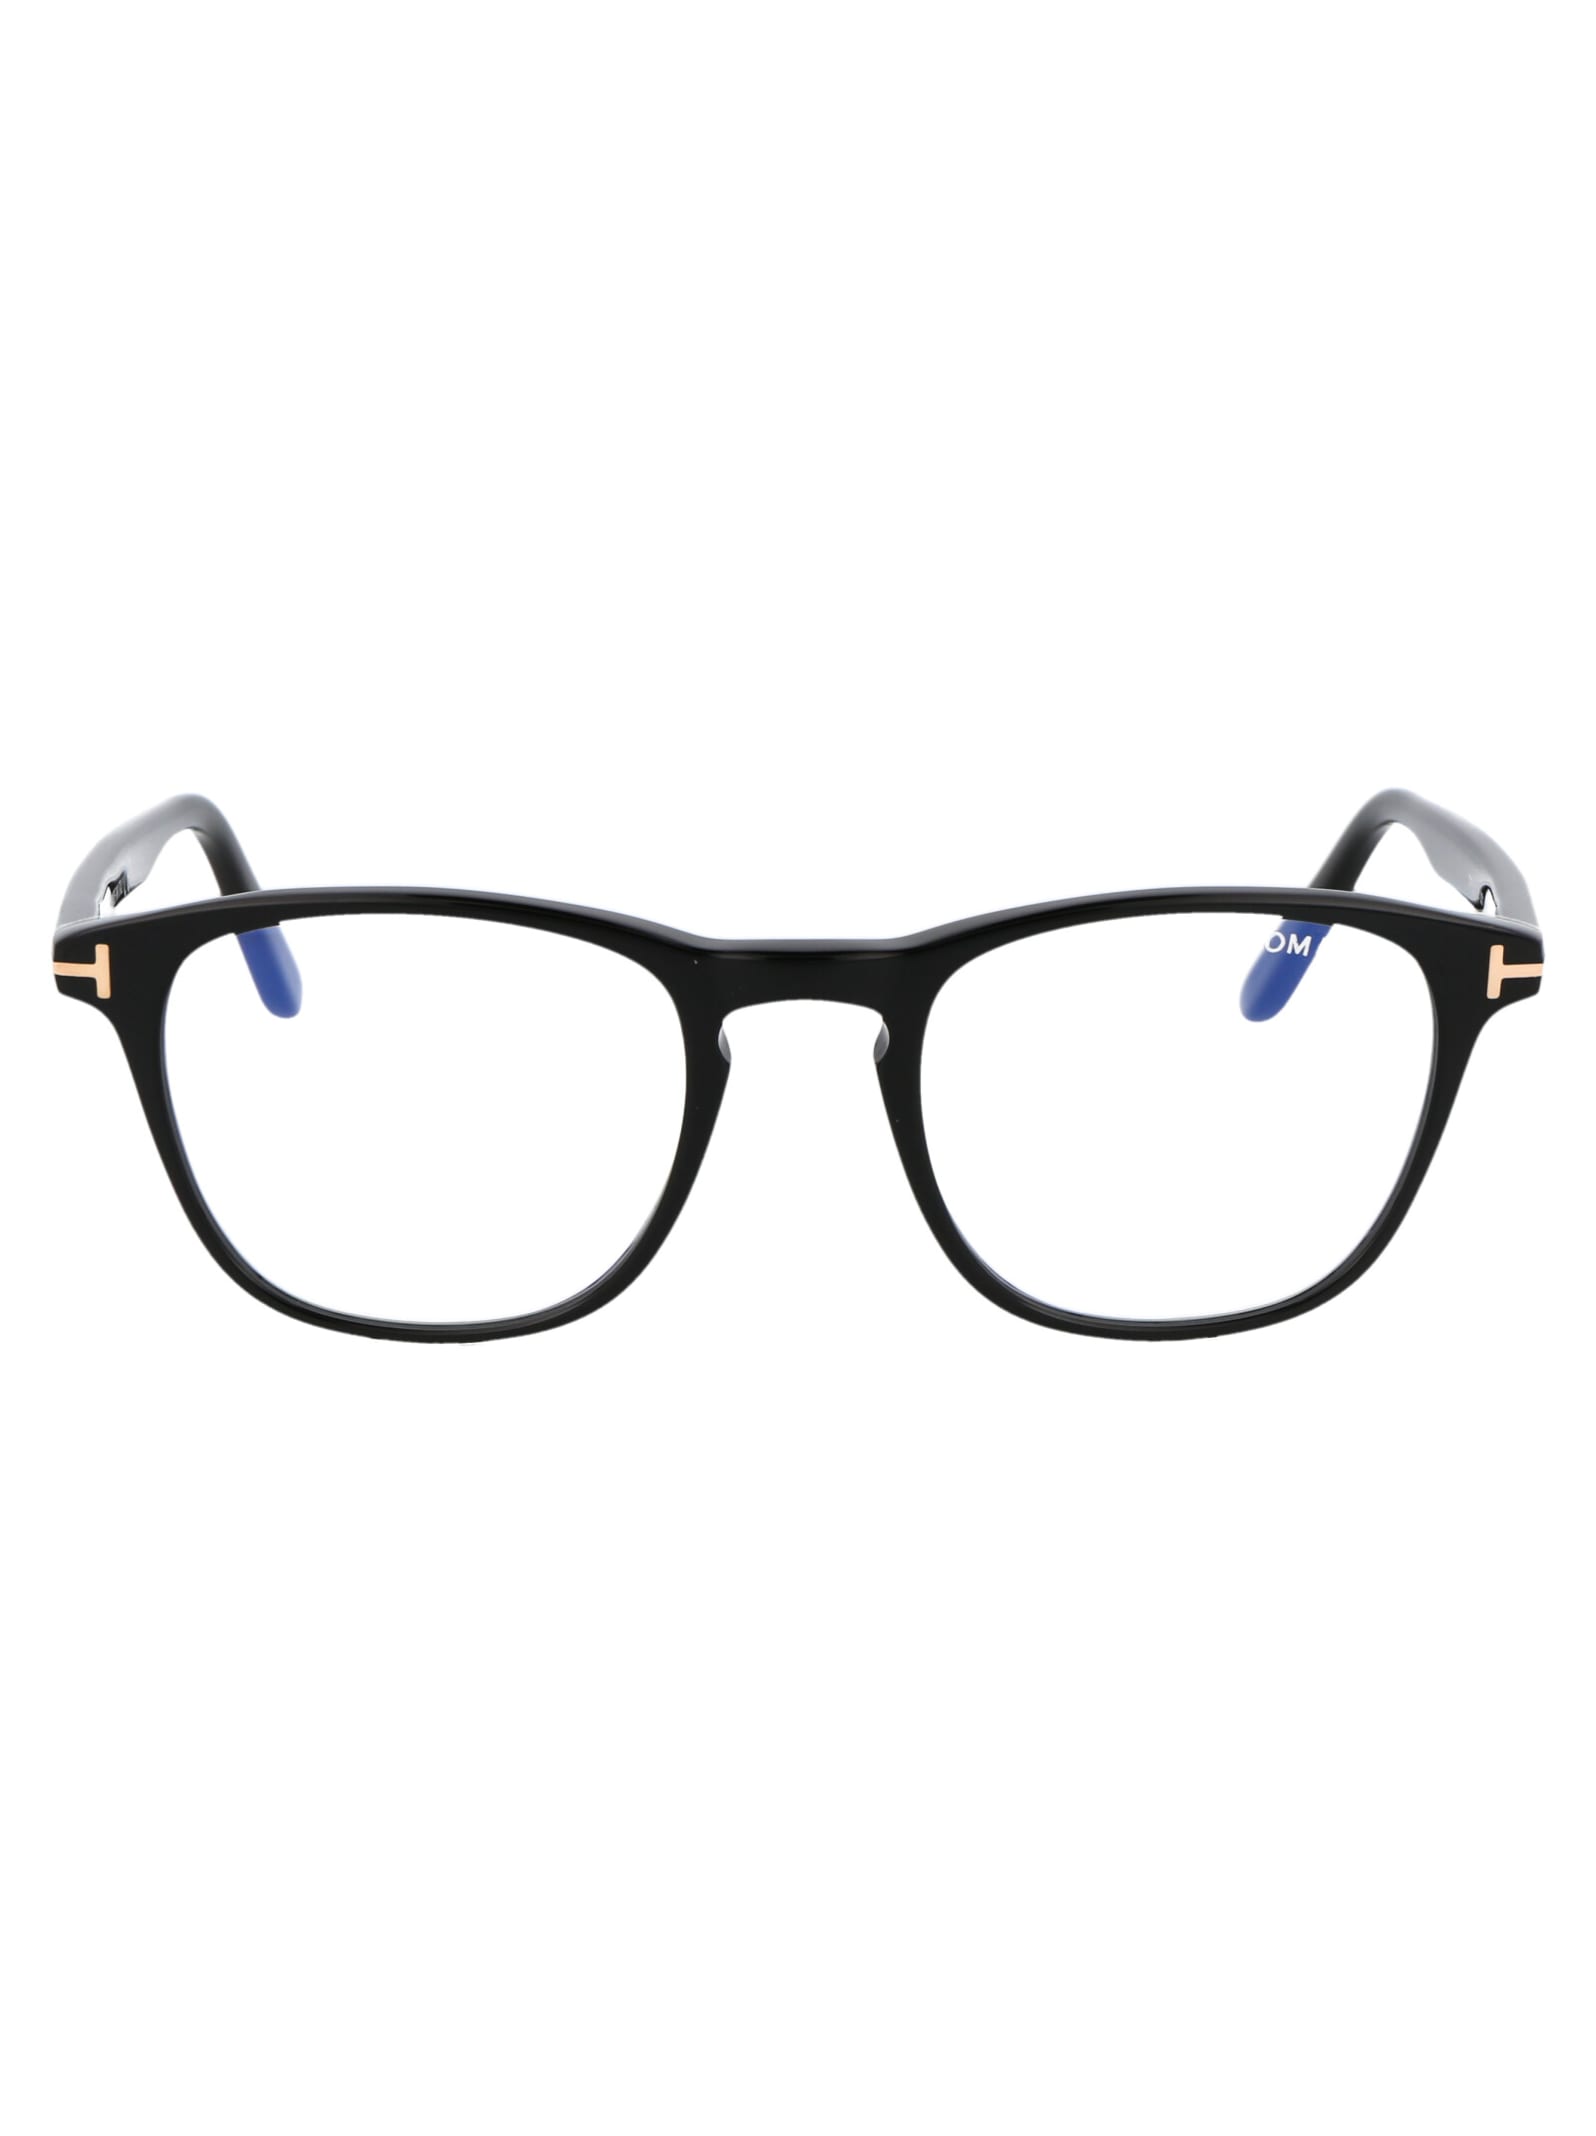 Tom Ford Ft5625-b Glasses In 001 Black | ModeSens